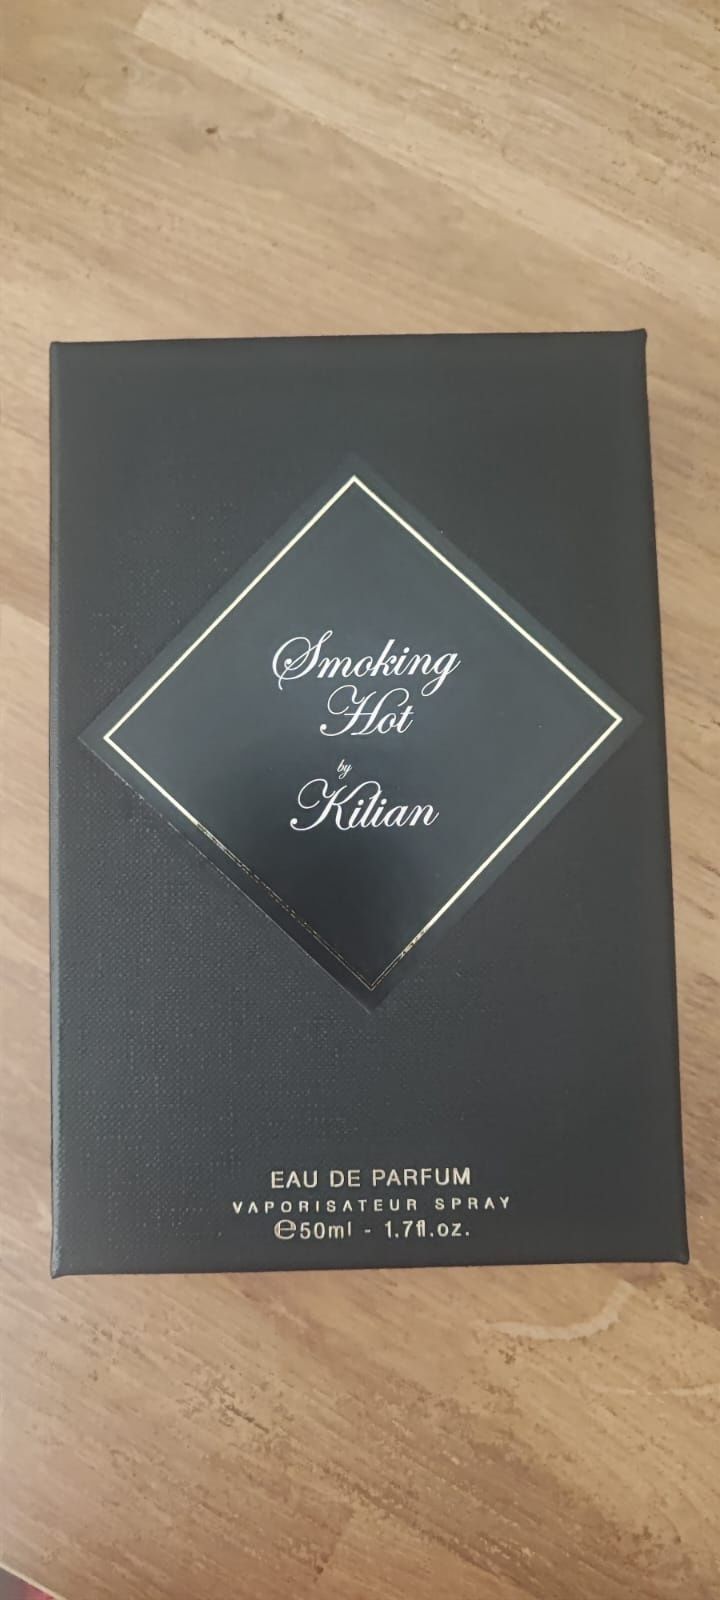 BY KILIAN the smokes smoking hot